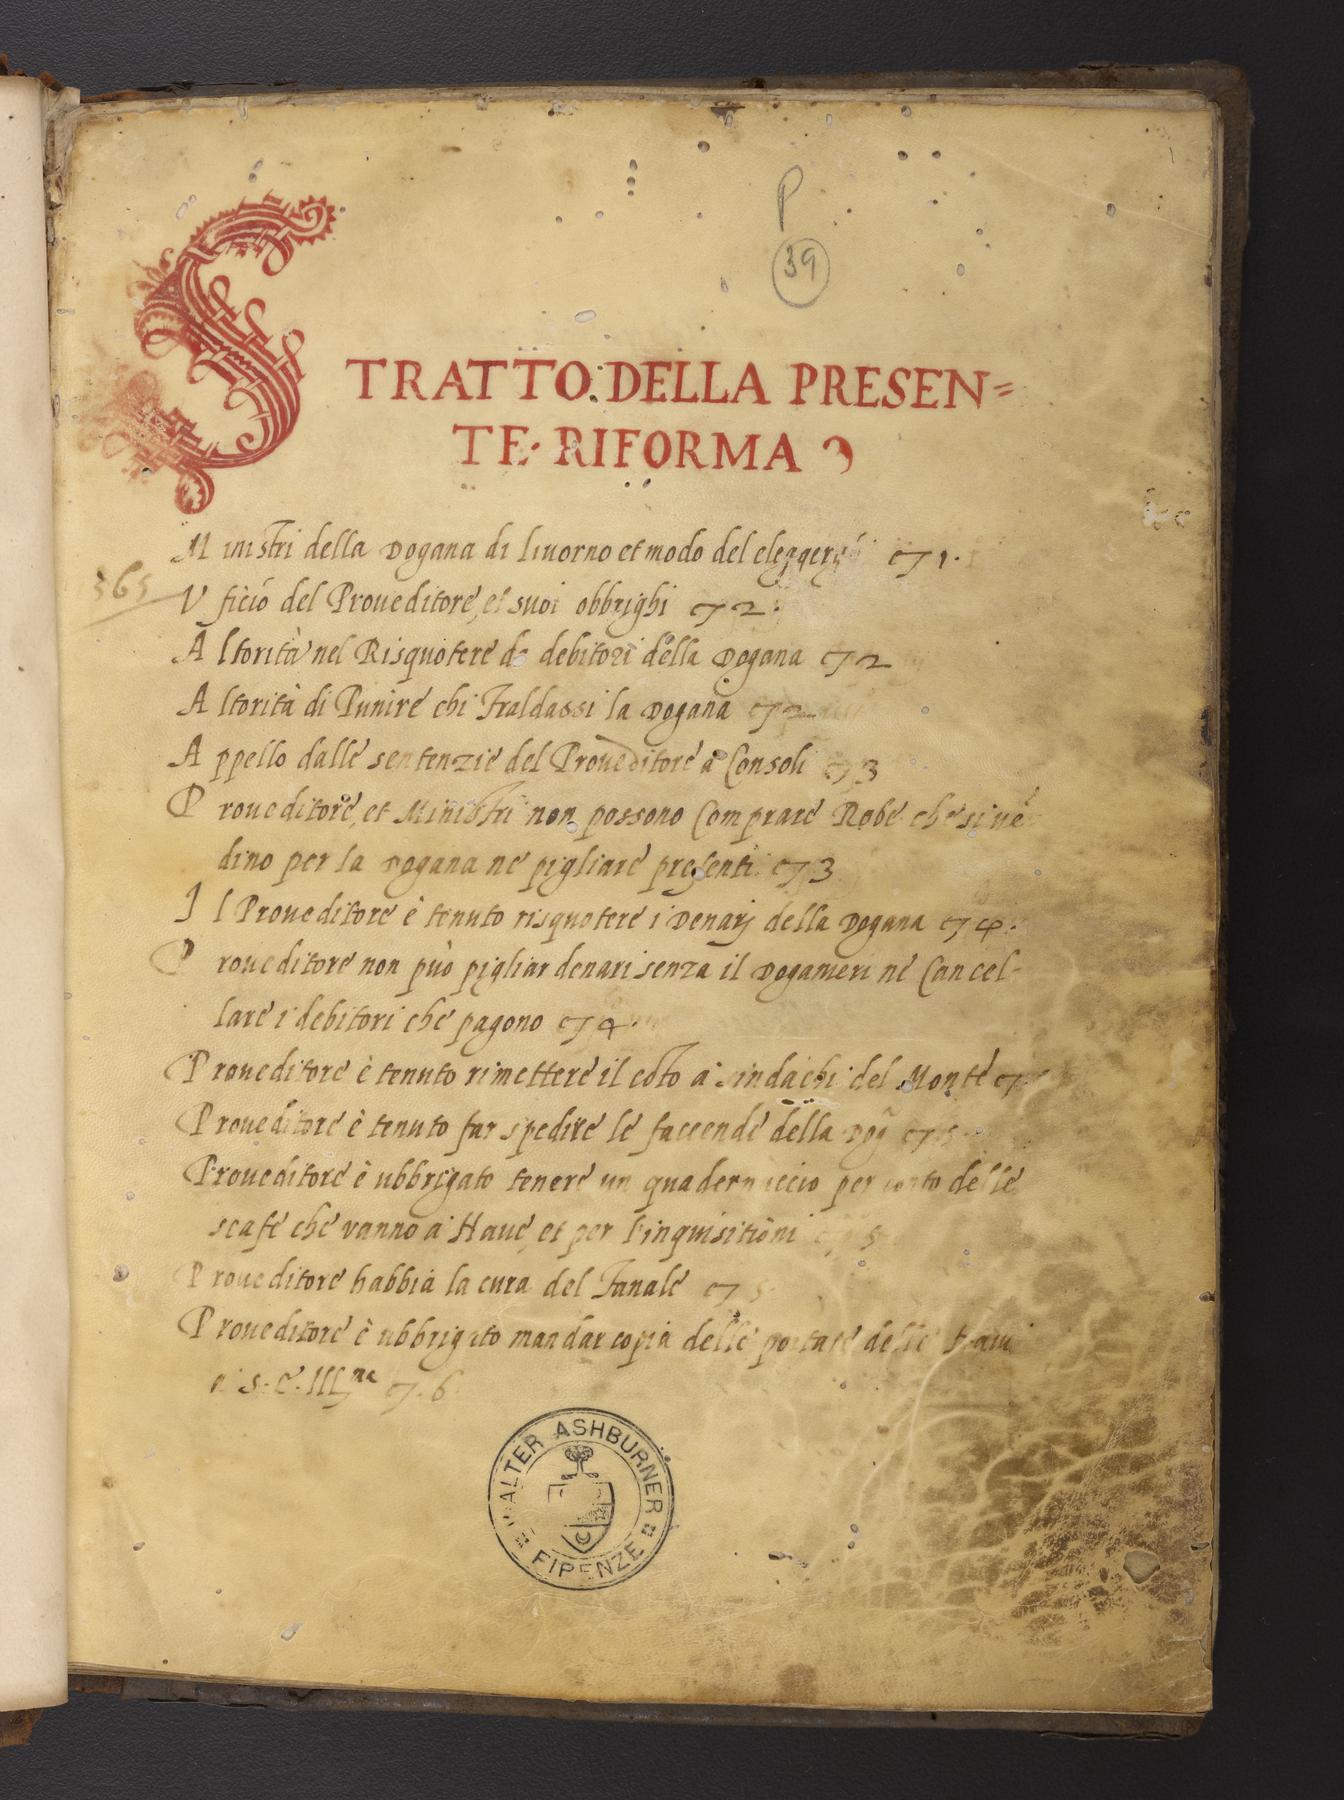 Statuti della Dogana, title page